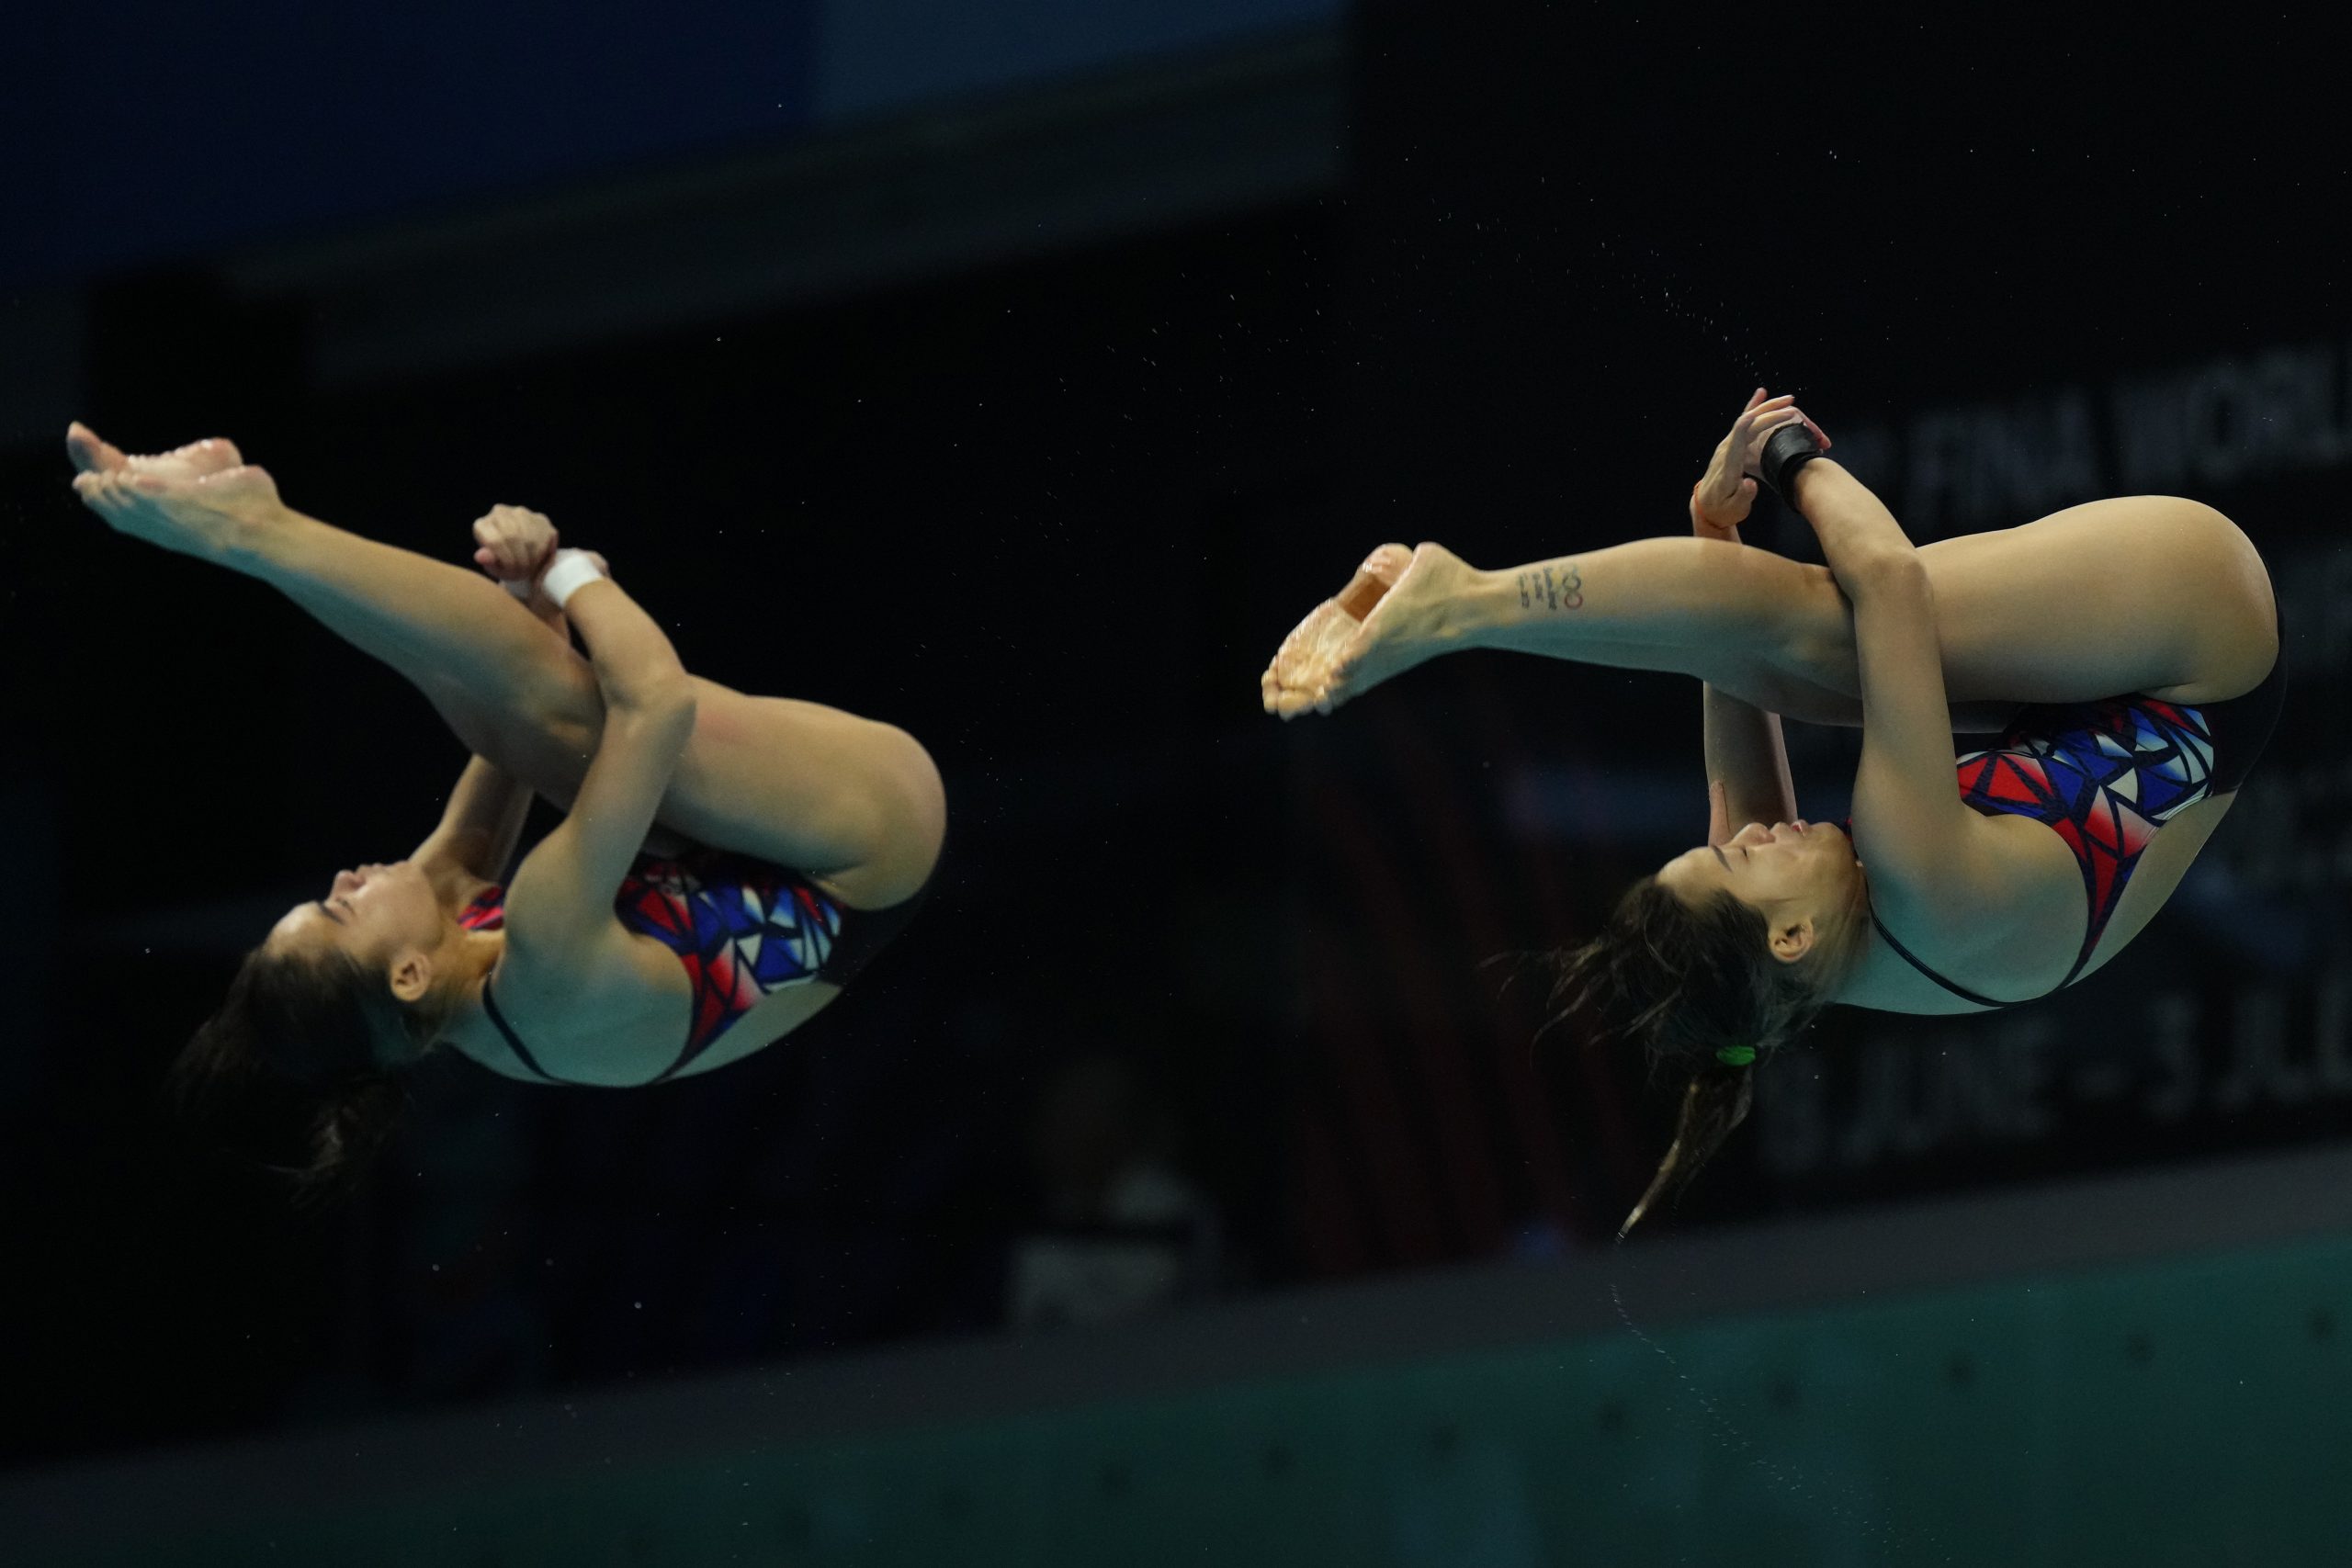 世界水上运动锦标赛| 满意双人3公尺板表现  丽颐盼续搭碧妲征共运会